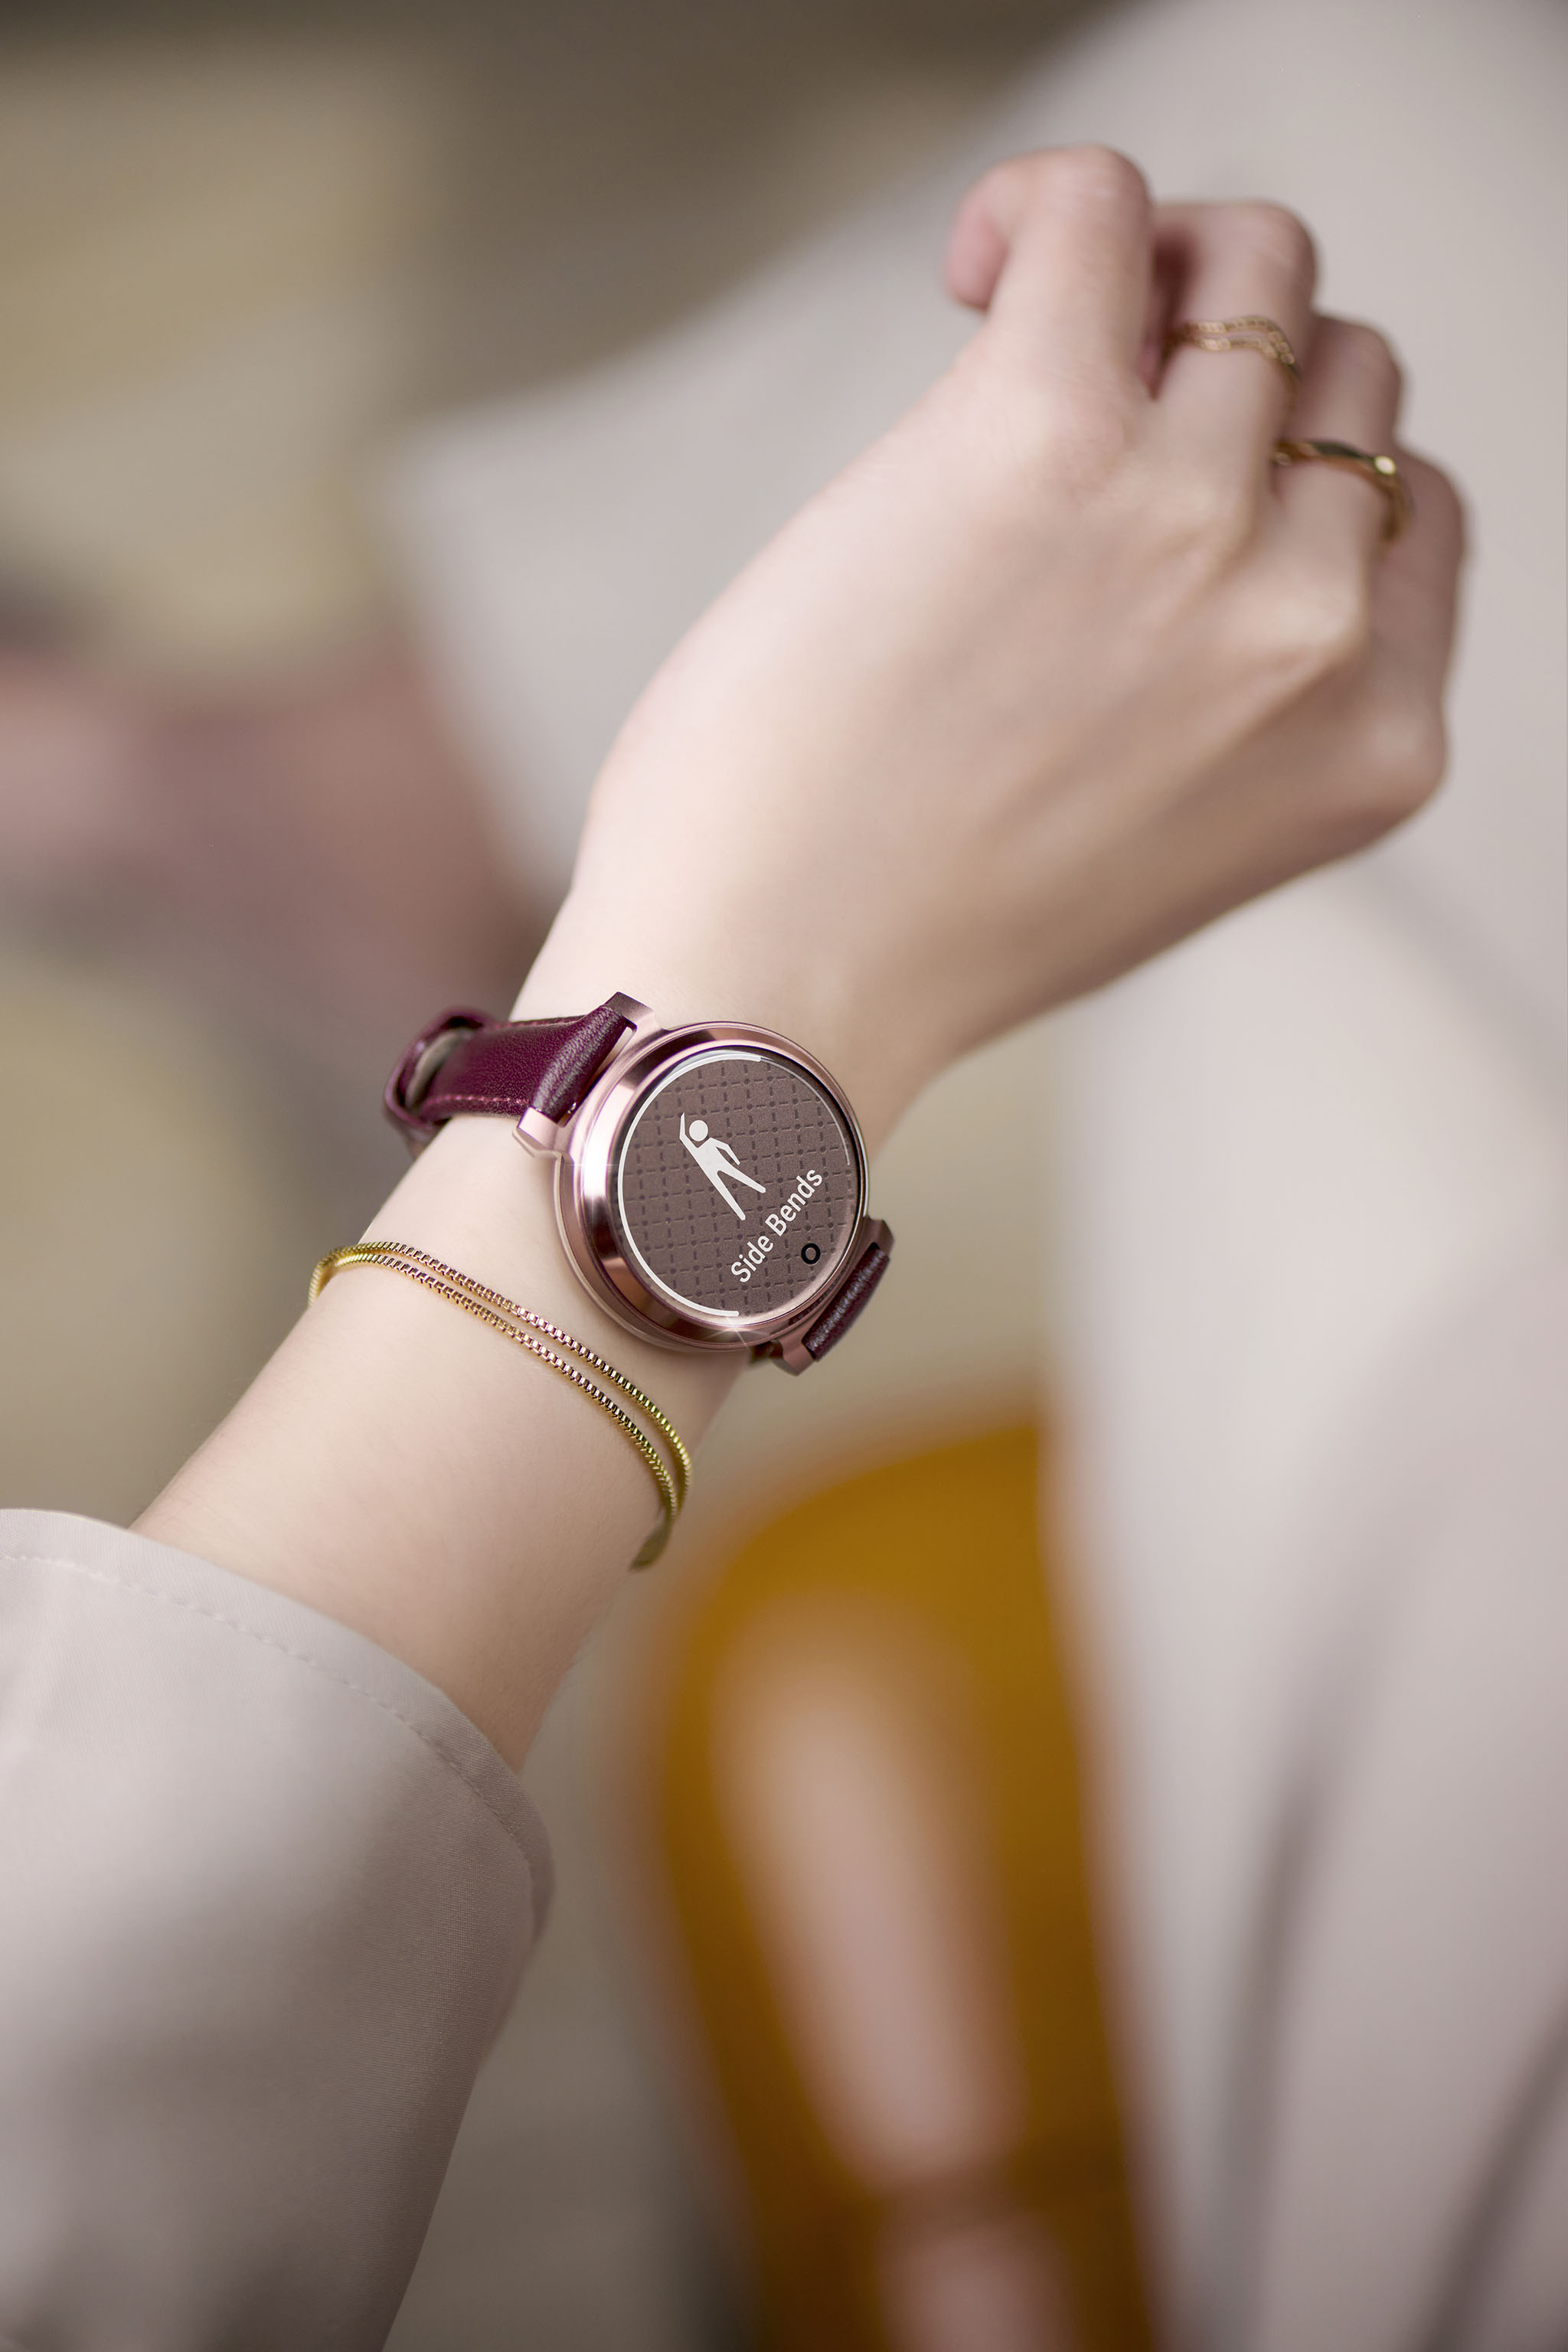 Garmin ra mắt smartwatch thời trang cho phái nữ: Thiết kế cao cấp, nhiều dây đeo, giá từ 6,99 triệu đồng- Ảnh 3.